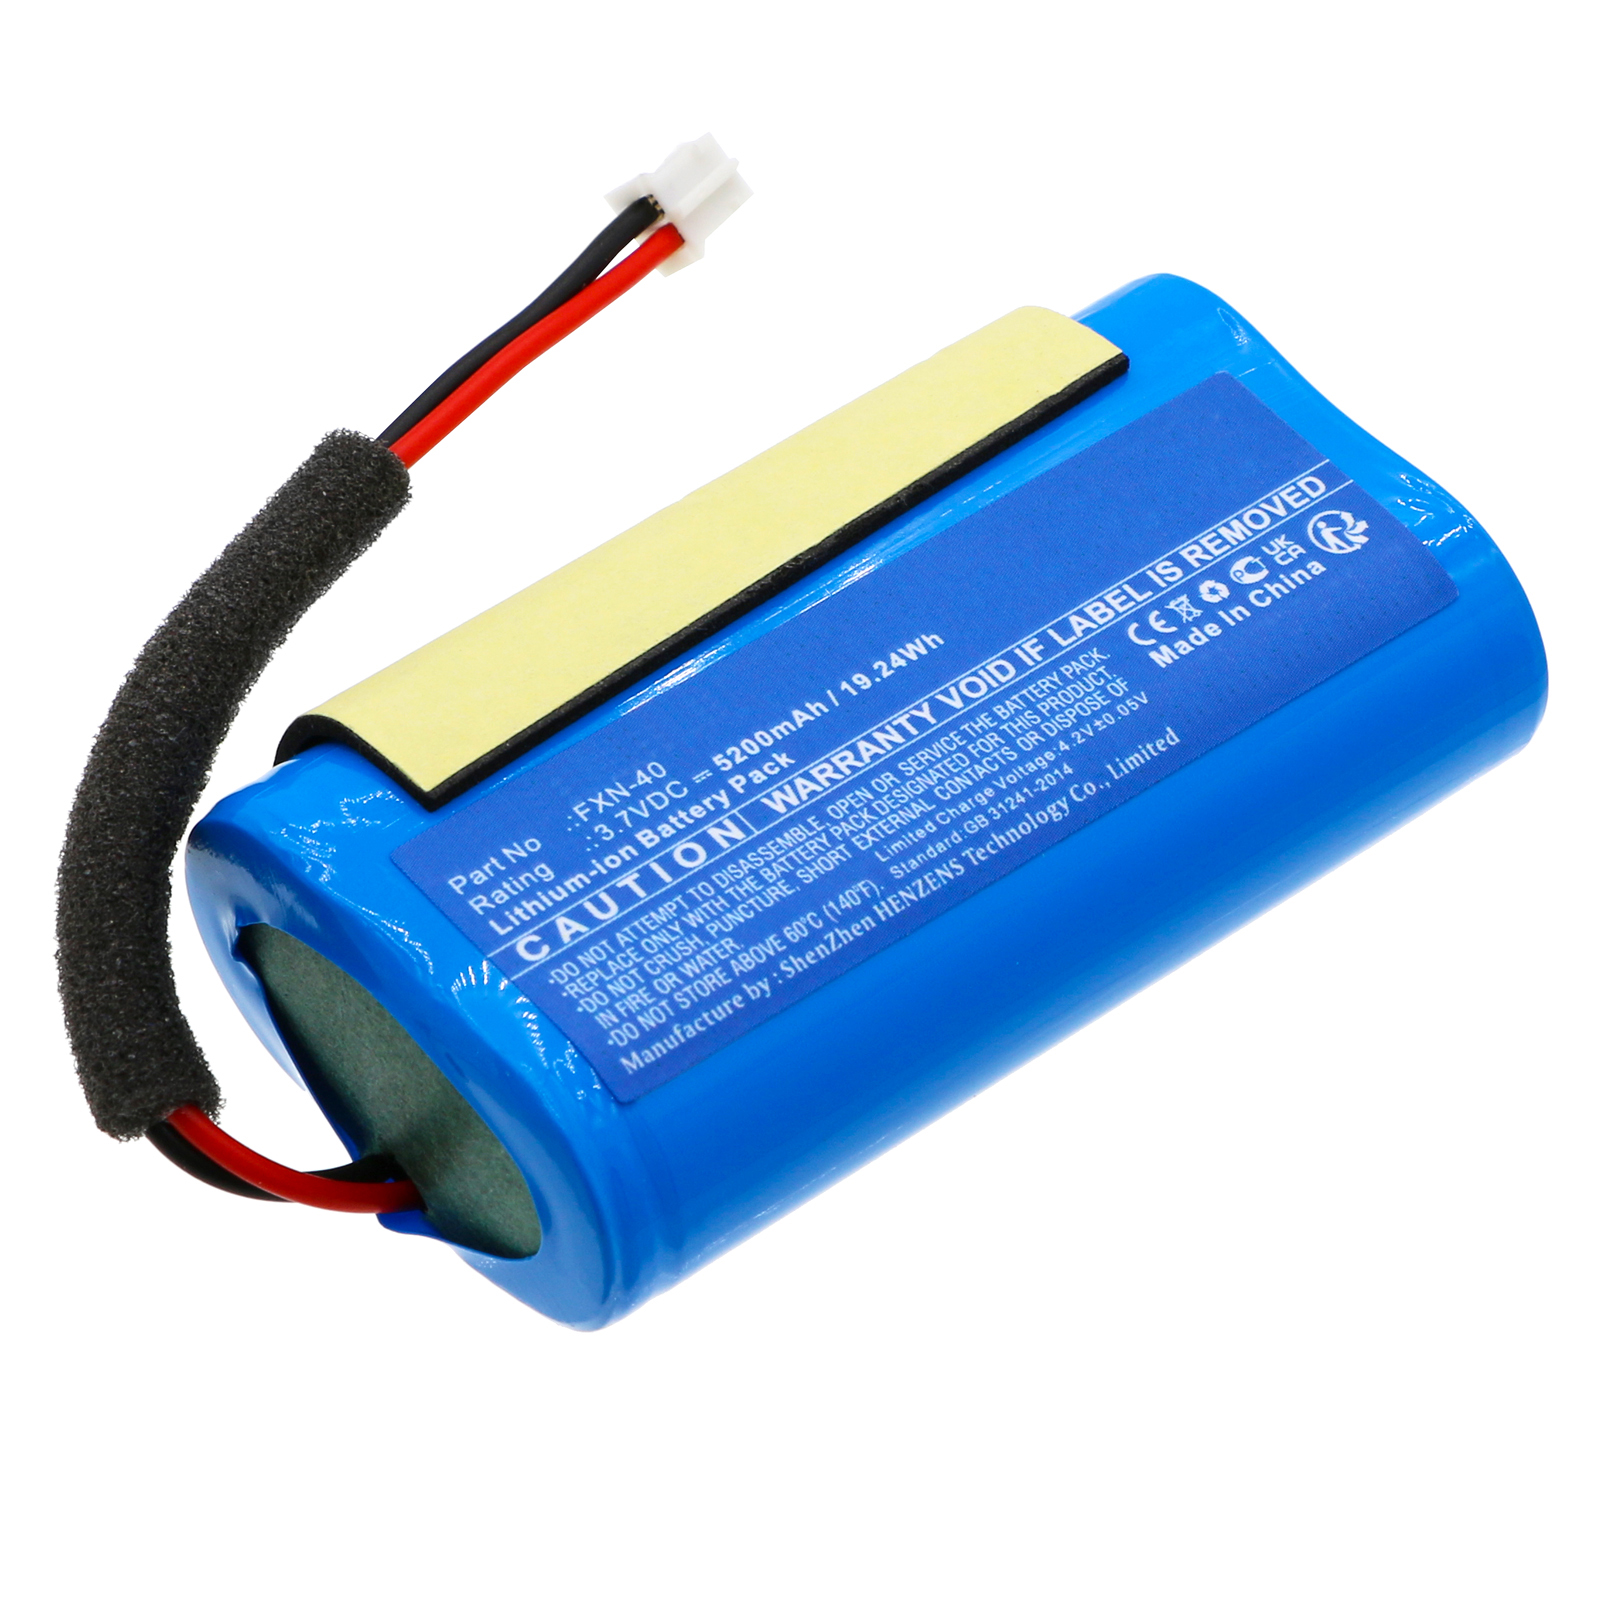 Batteries for MonsterSpeaker